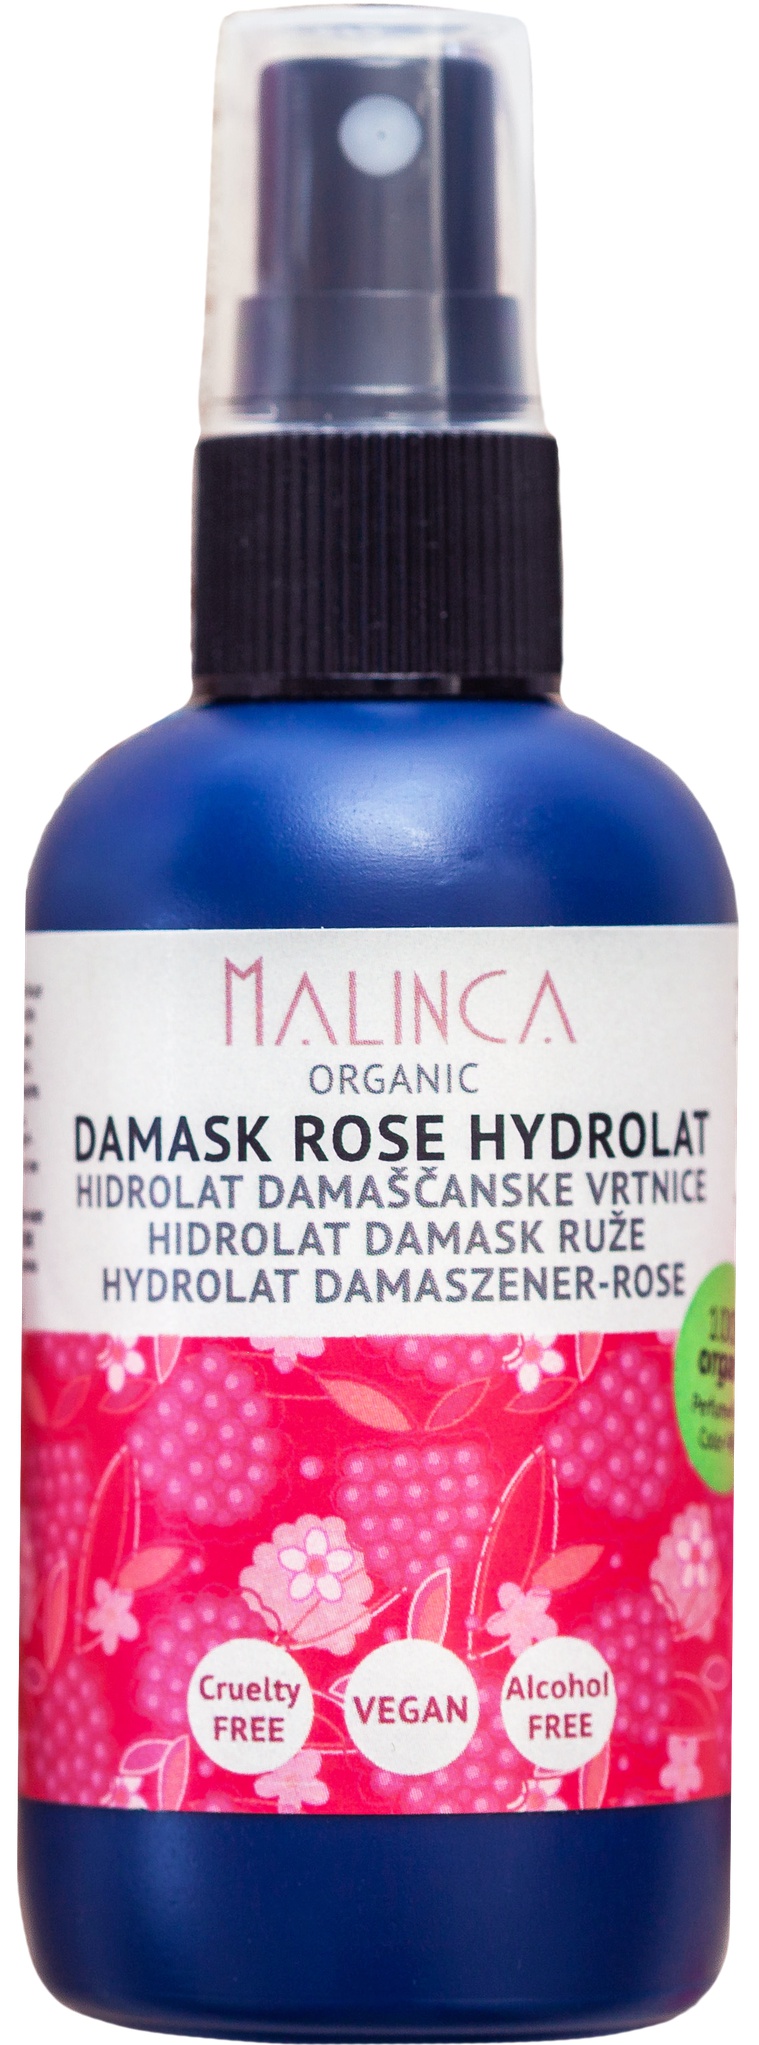 Malinca Organic Damask Rose Hydrosol (Rose Water)